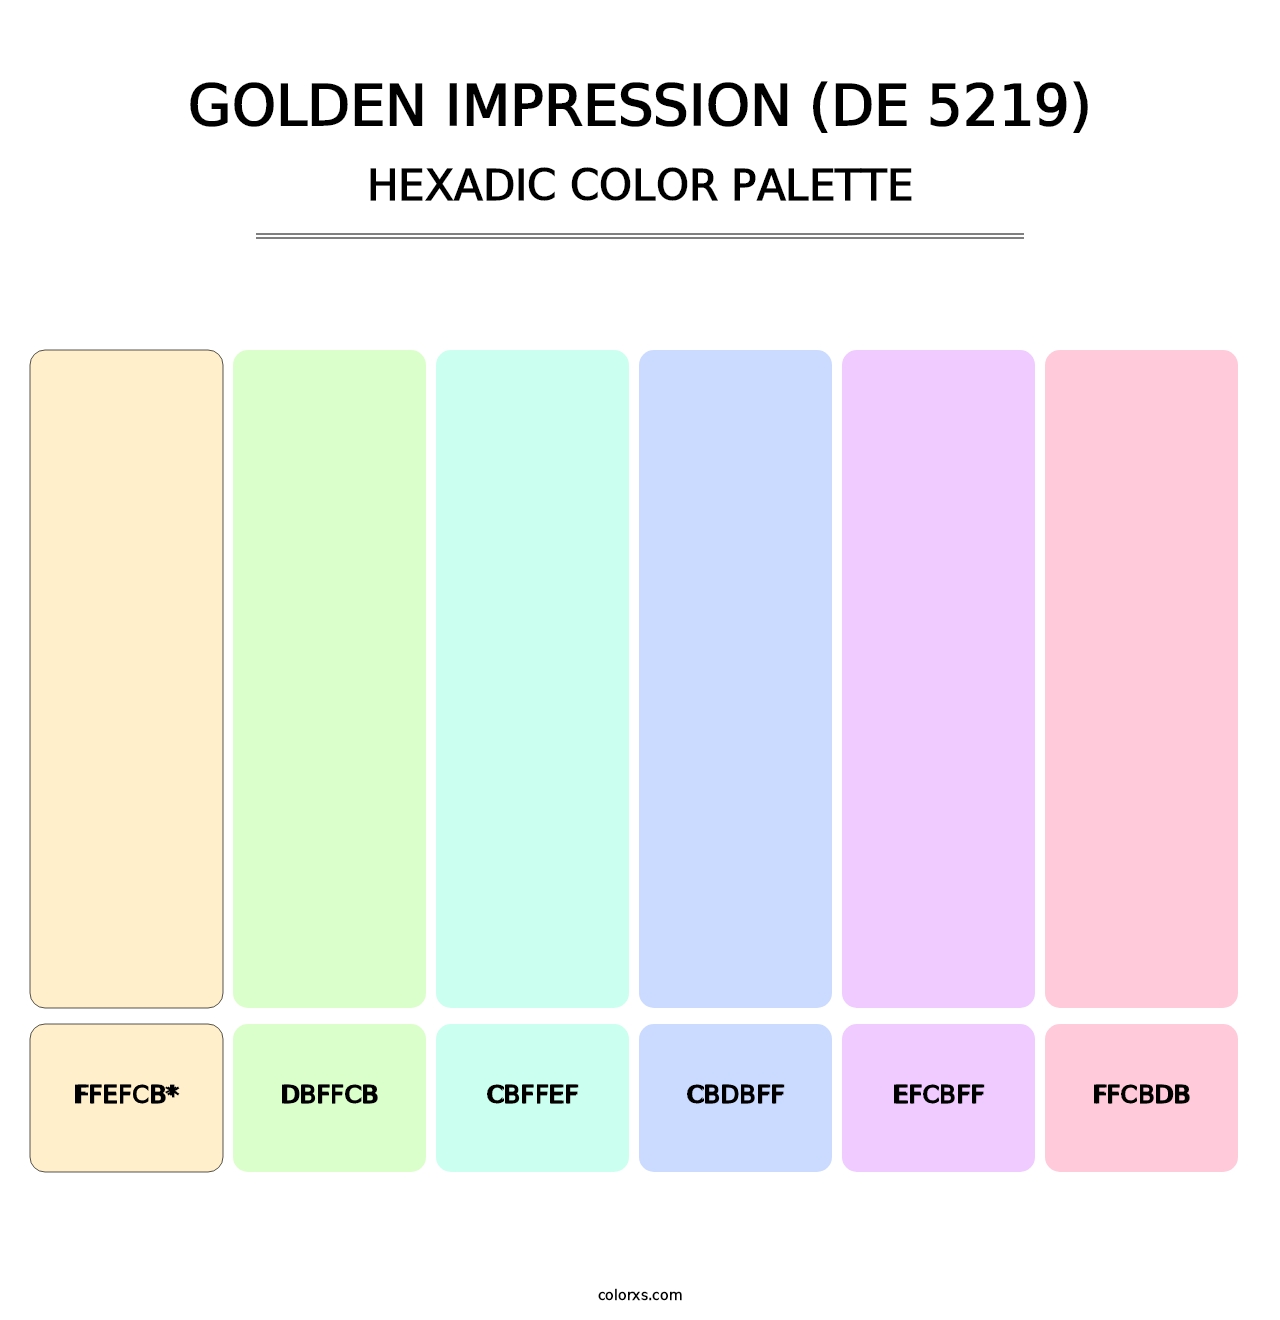 Golden Impression (DE 5219) - Hexadic Color Palette